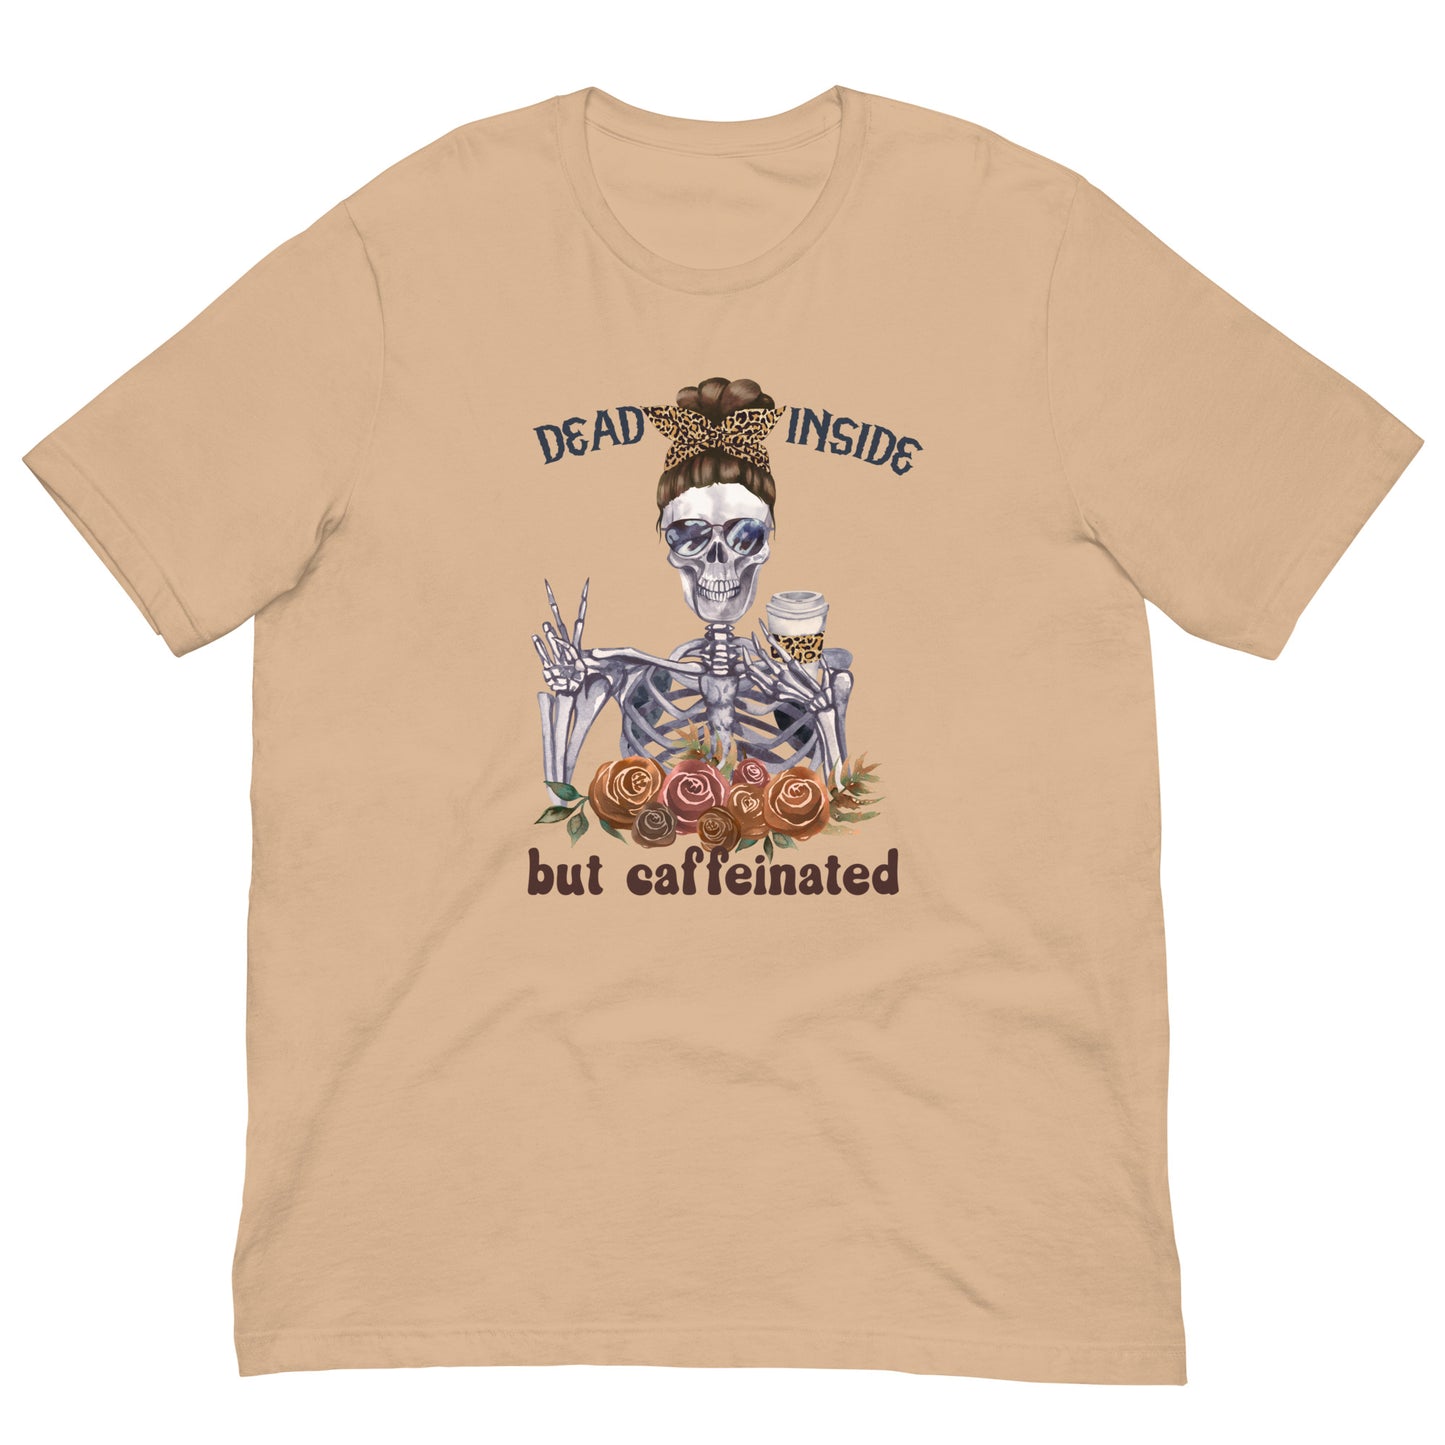 "Dead Inside, but Caffeinated" T-shirt